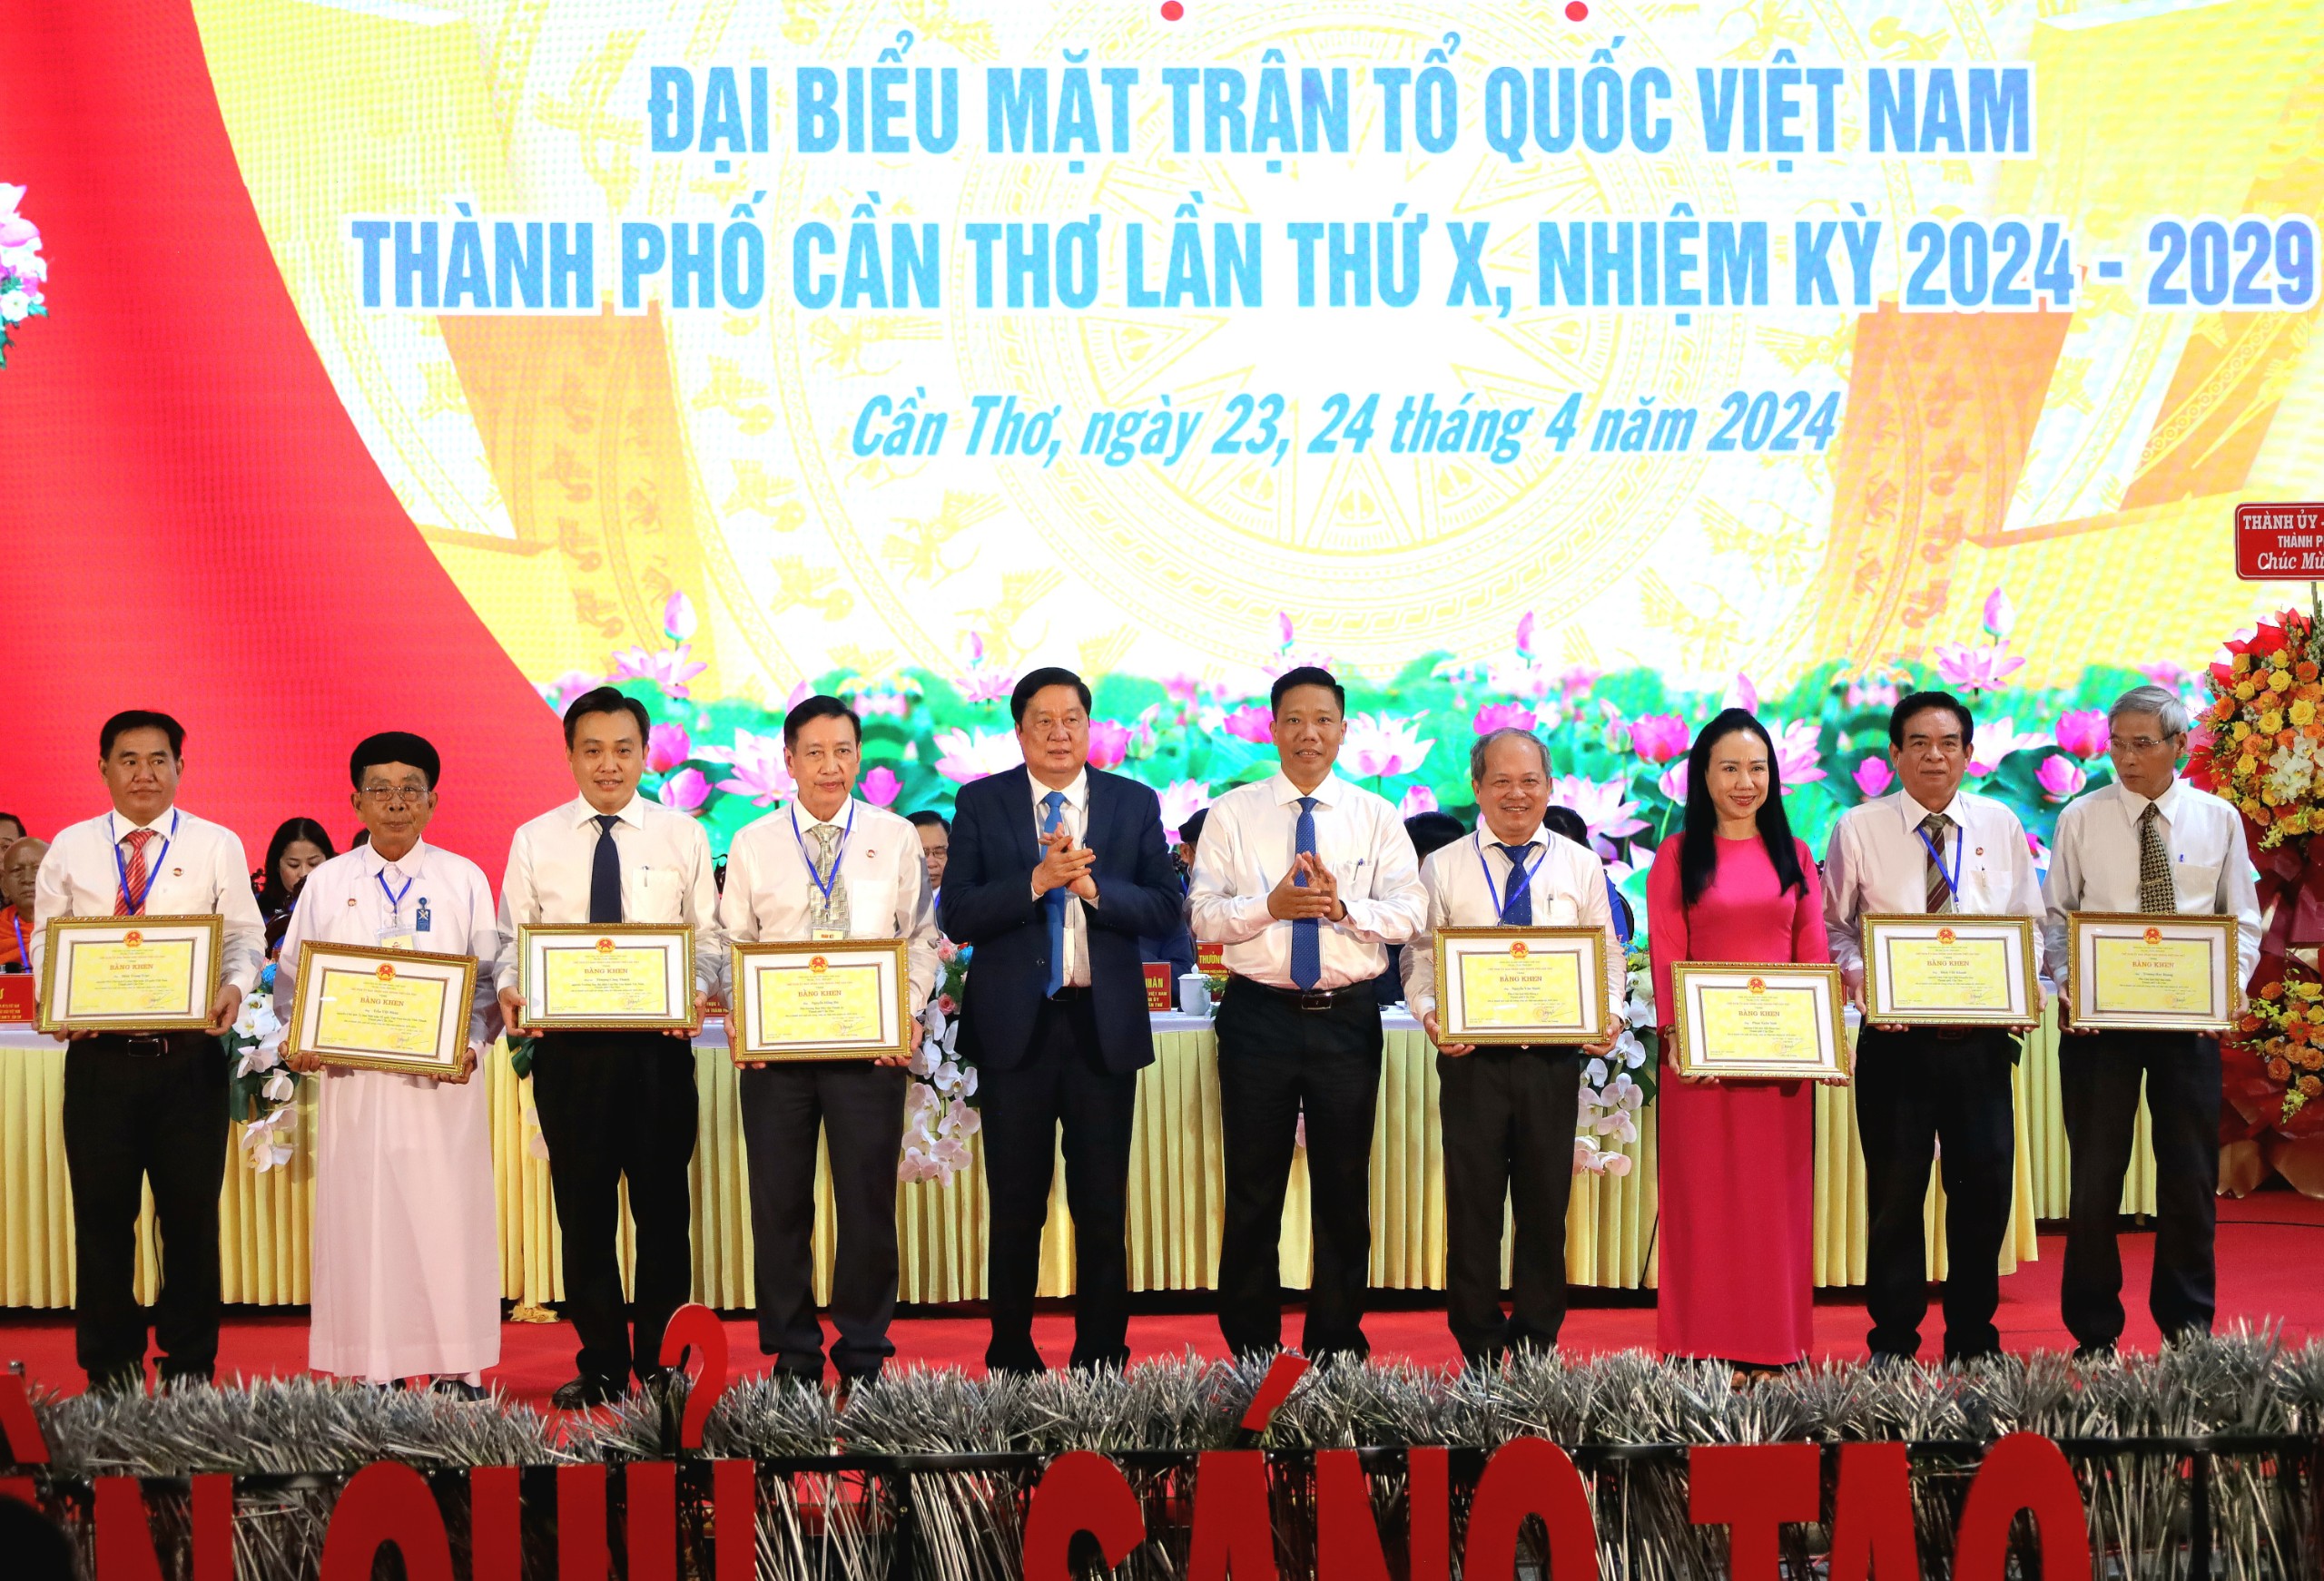 và ông Nguyễn Thực Hiện - Phó Chủ tịch UBND TP. Cần Thơ trao tặng bằng khen của Chủ tịch UBND thành phố cho các cá nhân có thành tích trong công tác Mặt trận nhiệm kỳ 2019-2024.